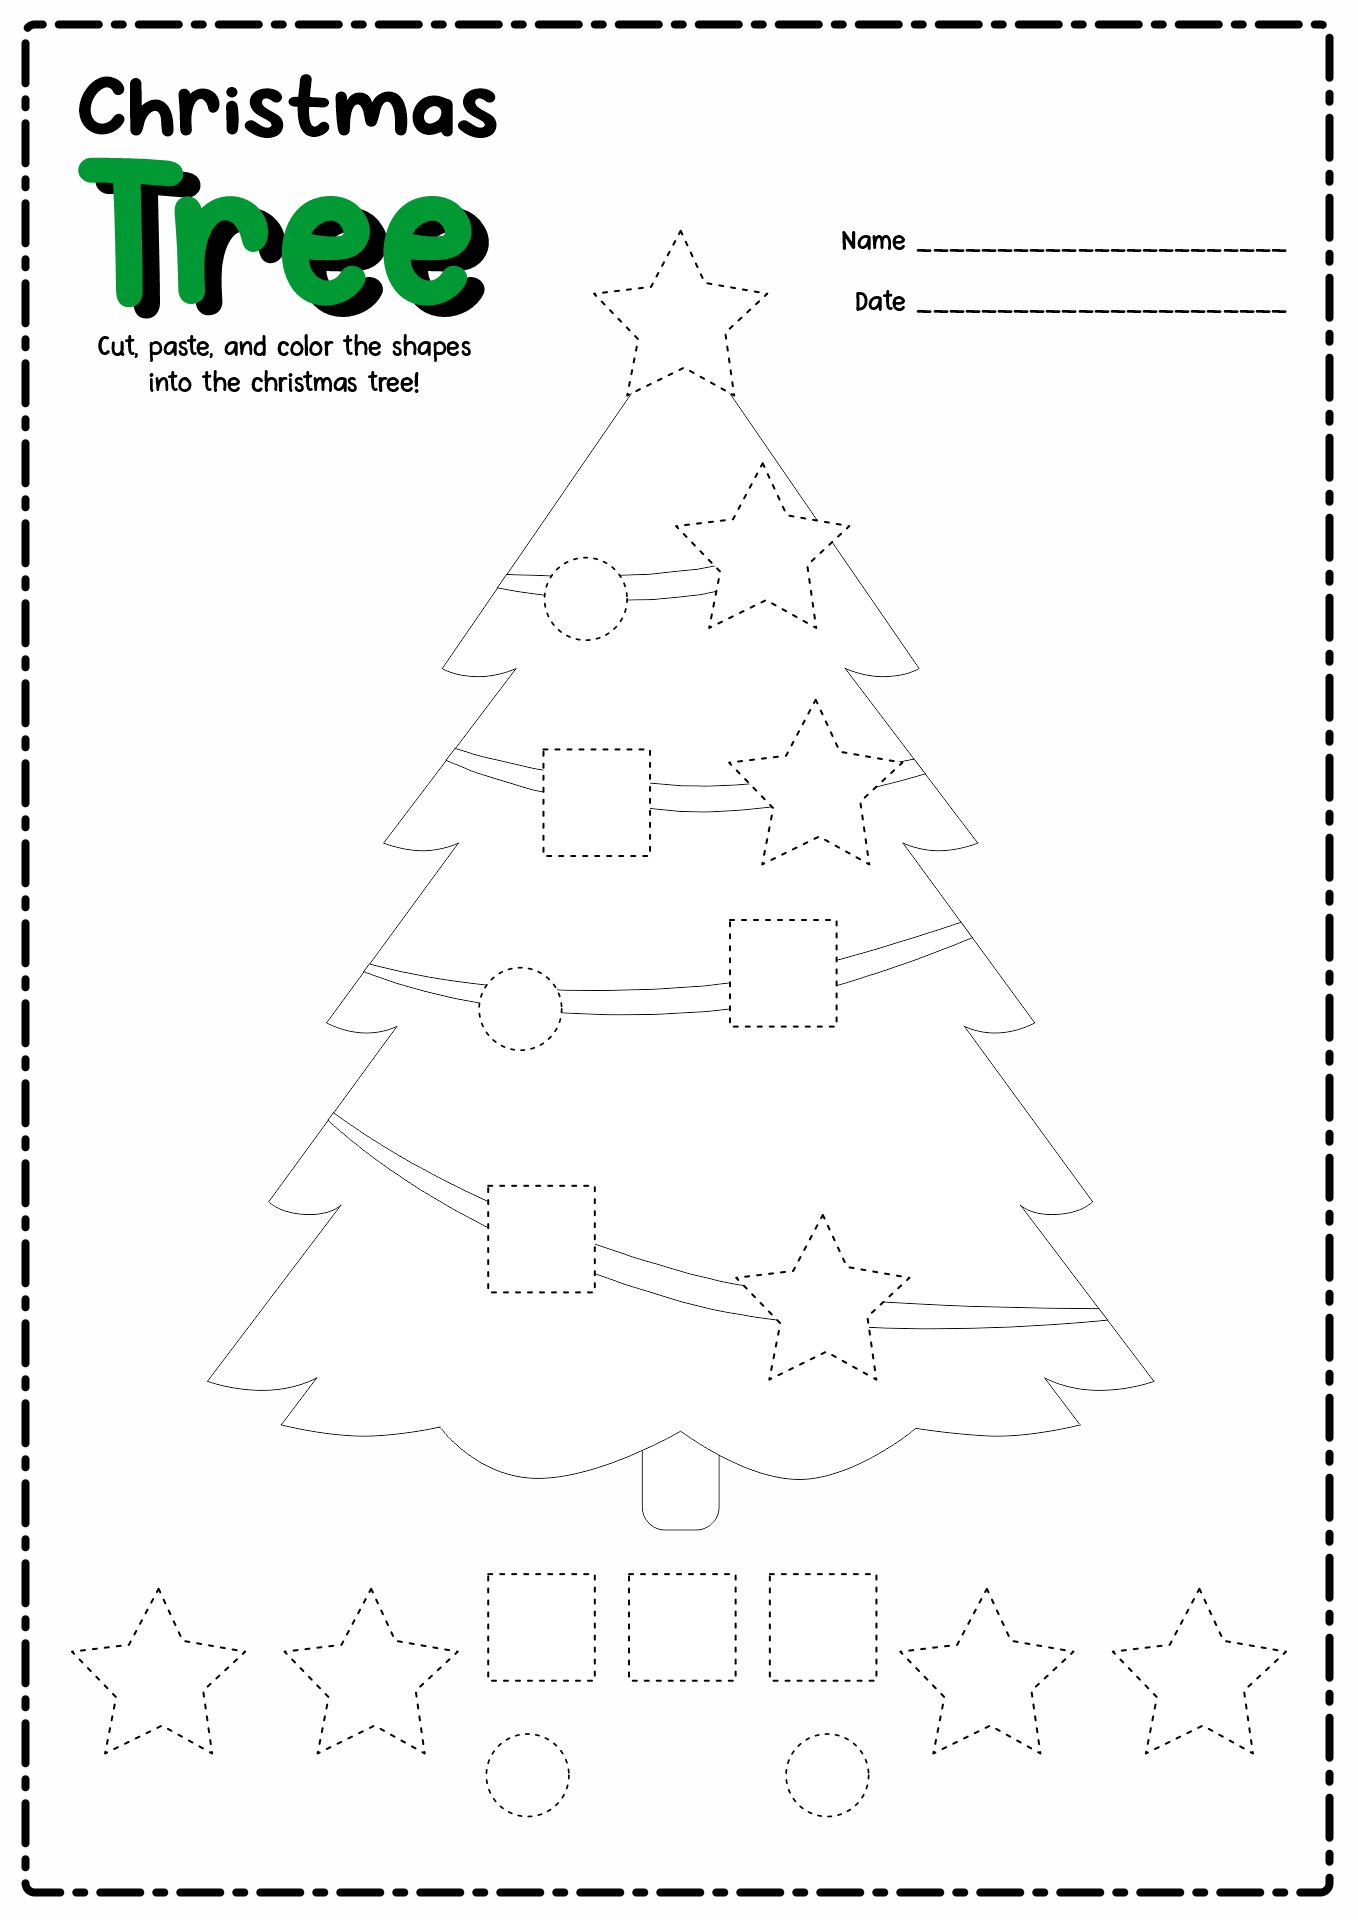 free-printable-christmas-cutting-activities-printable-templates